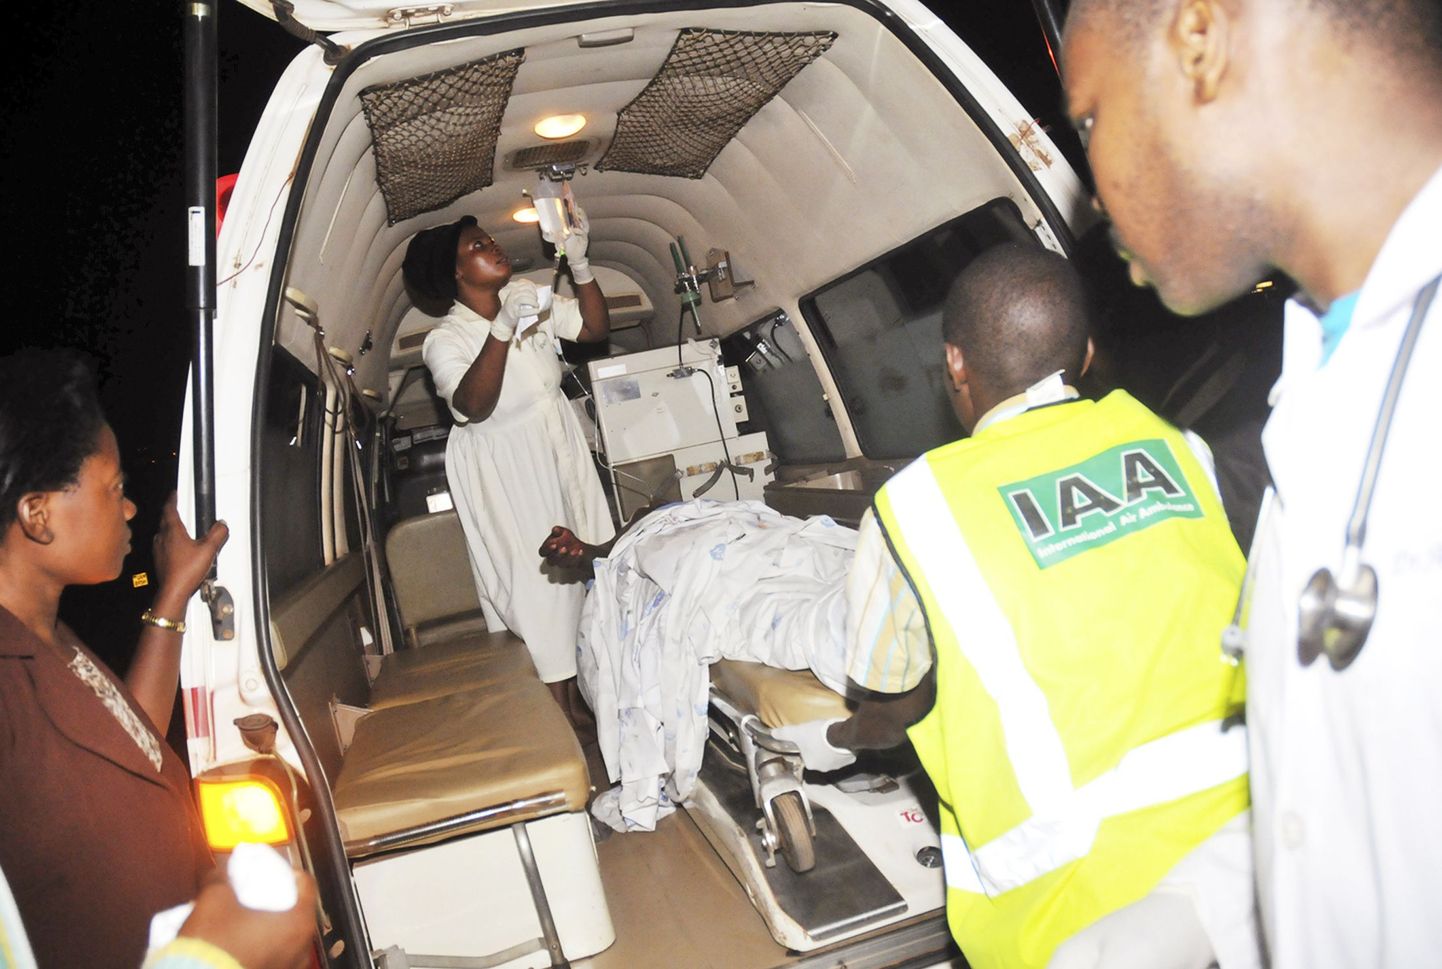 Arstid plahvatuses viga saanud isikut Kampalas haiglasse viimas.